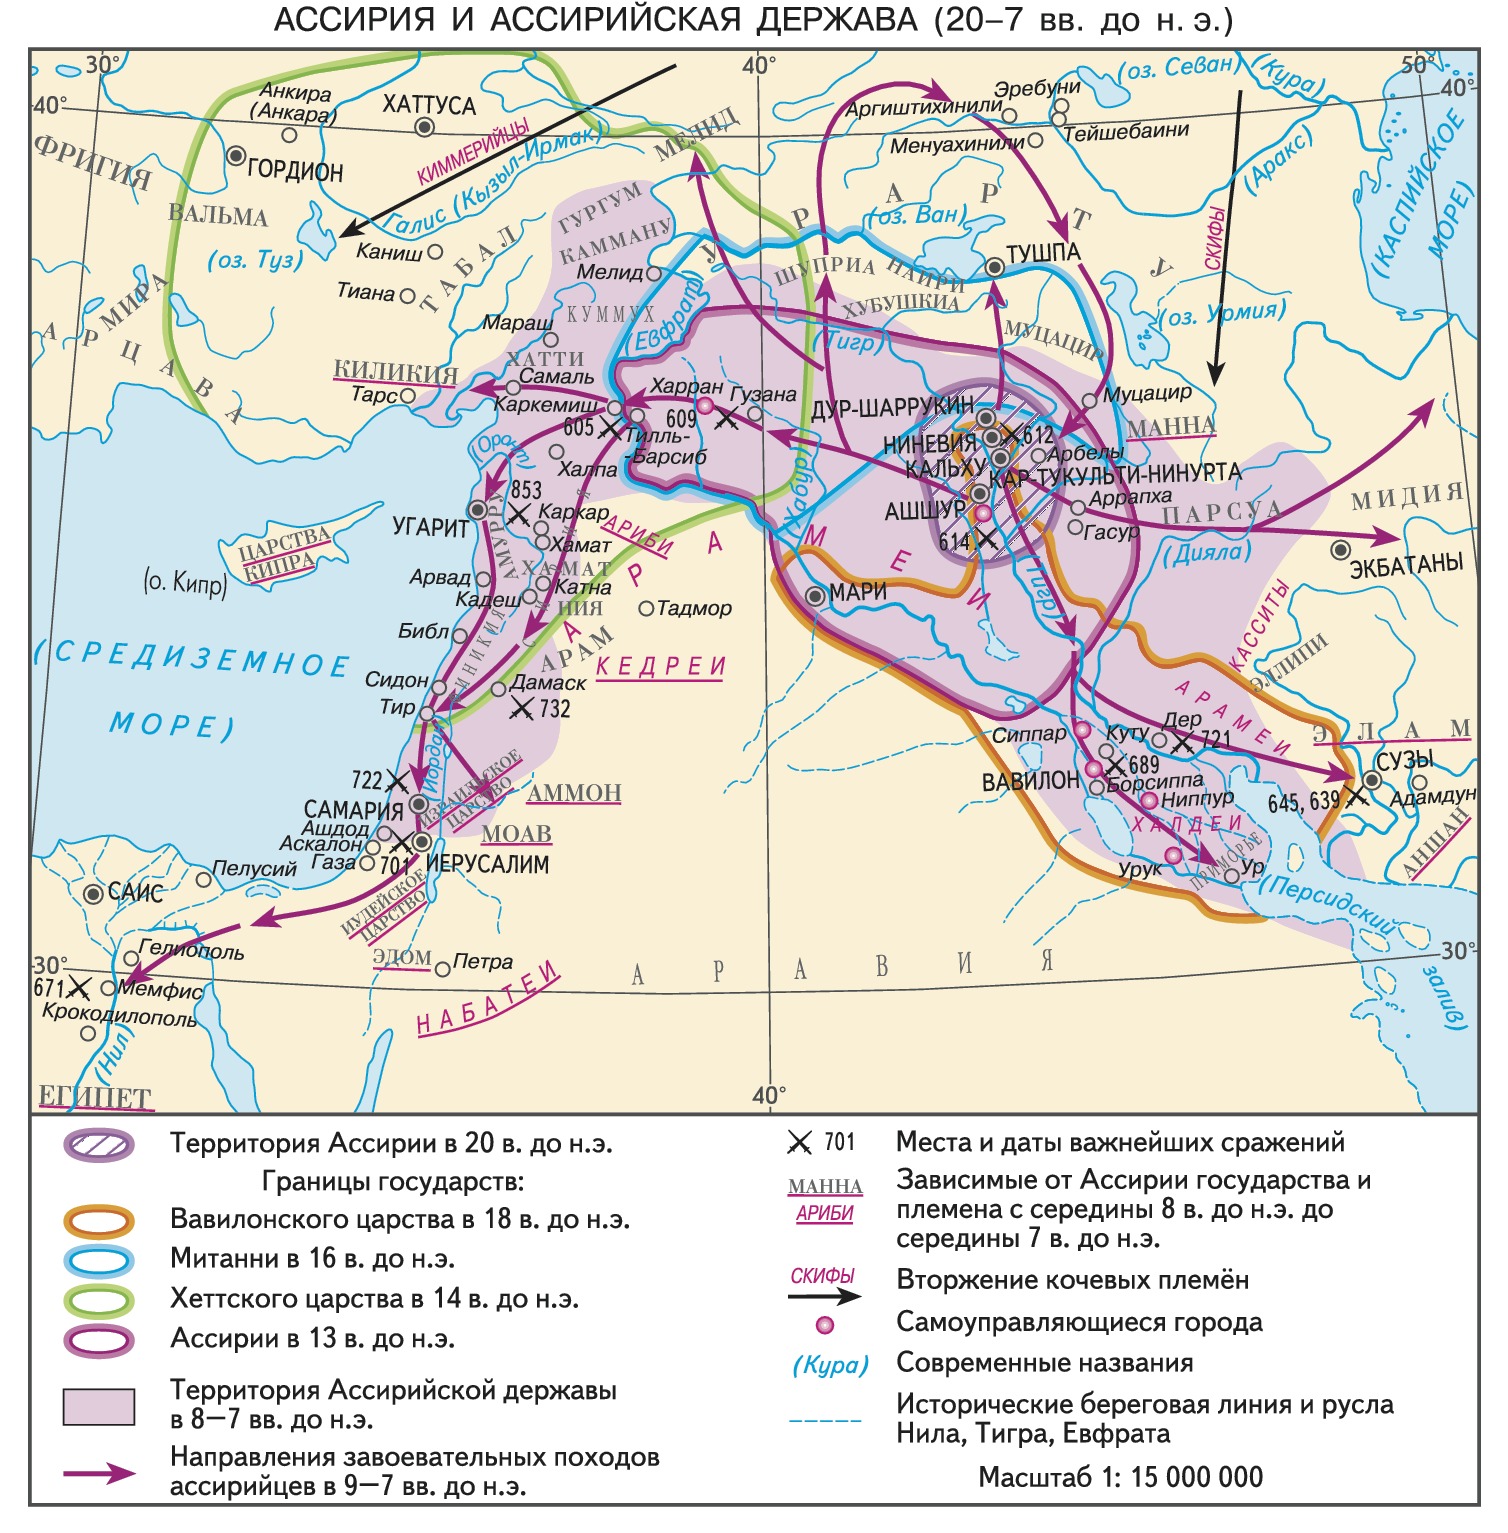 Ассирийская империя: потерянный город Хорсабад | Большая Азия